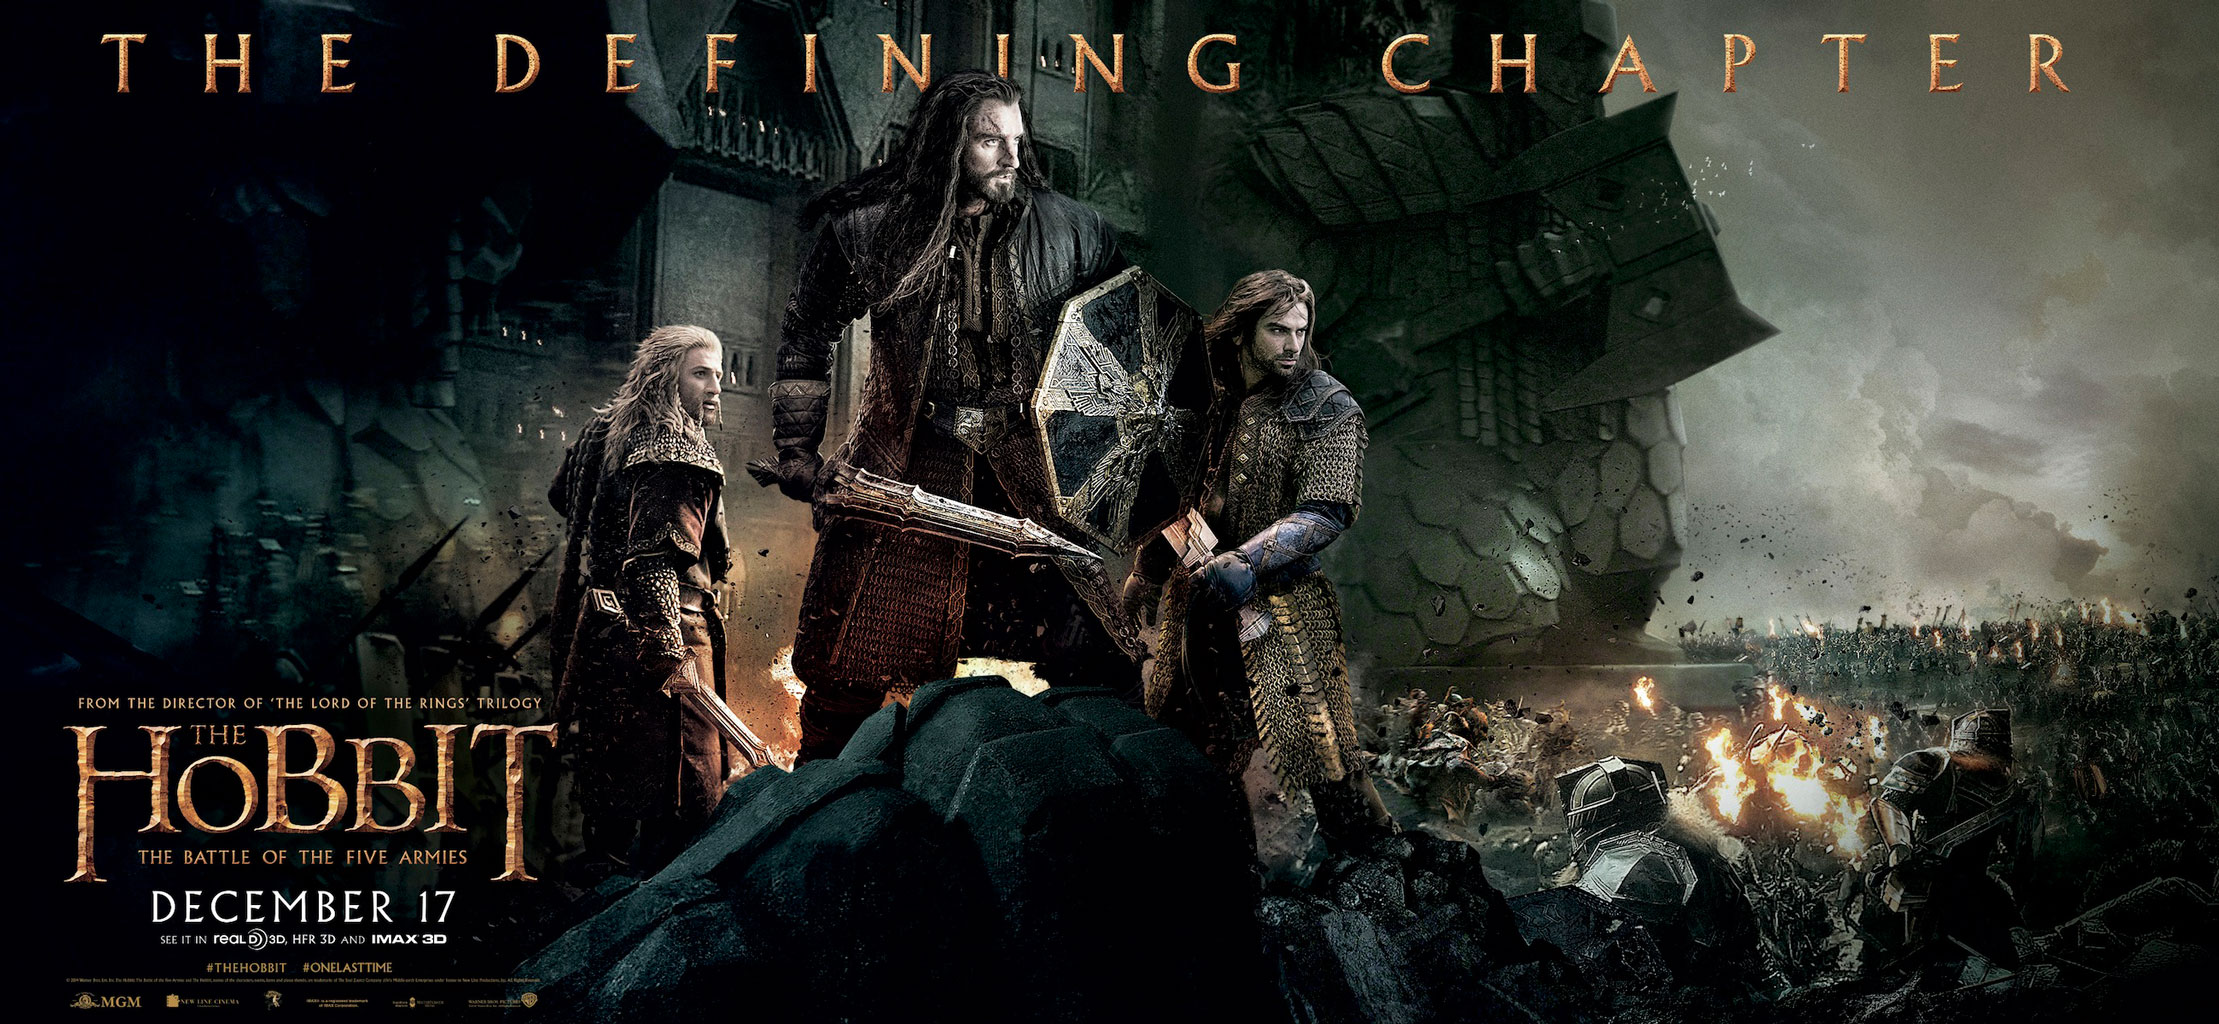 The Hobbit Battle Of Five Armies Movie Smaug Desktop